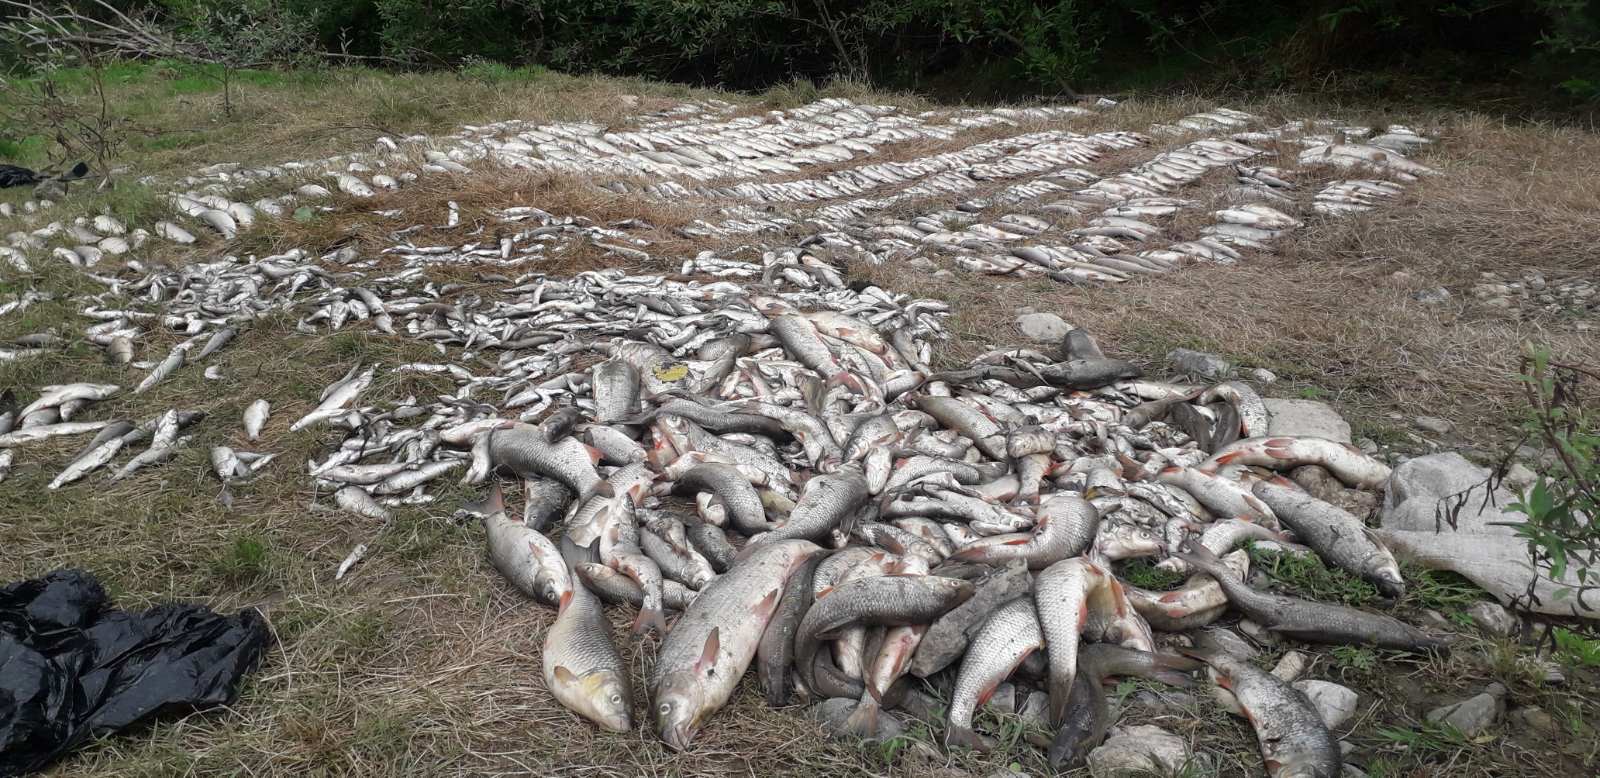 Srbija i ekologija: Pomor ribe u reci Kolubari - "Ljudska bahatost preèesto košta prirodu"